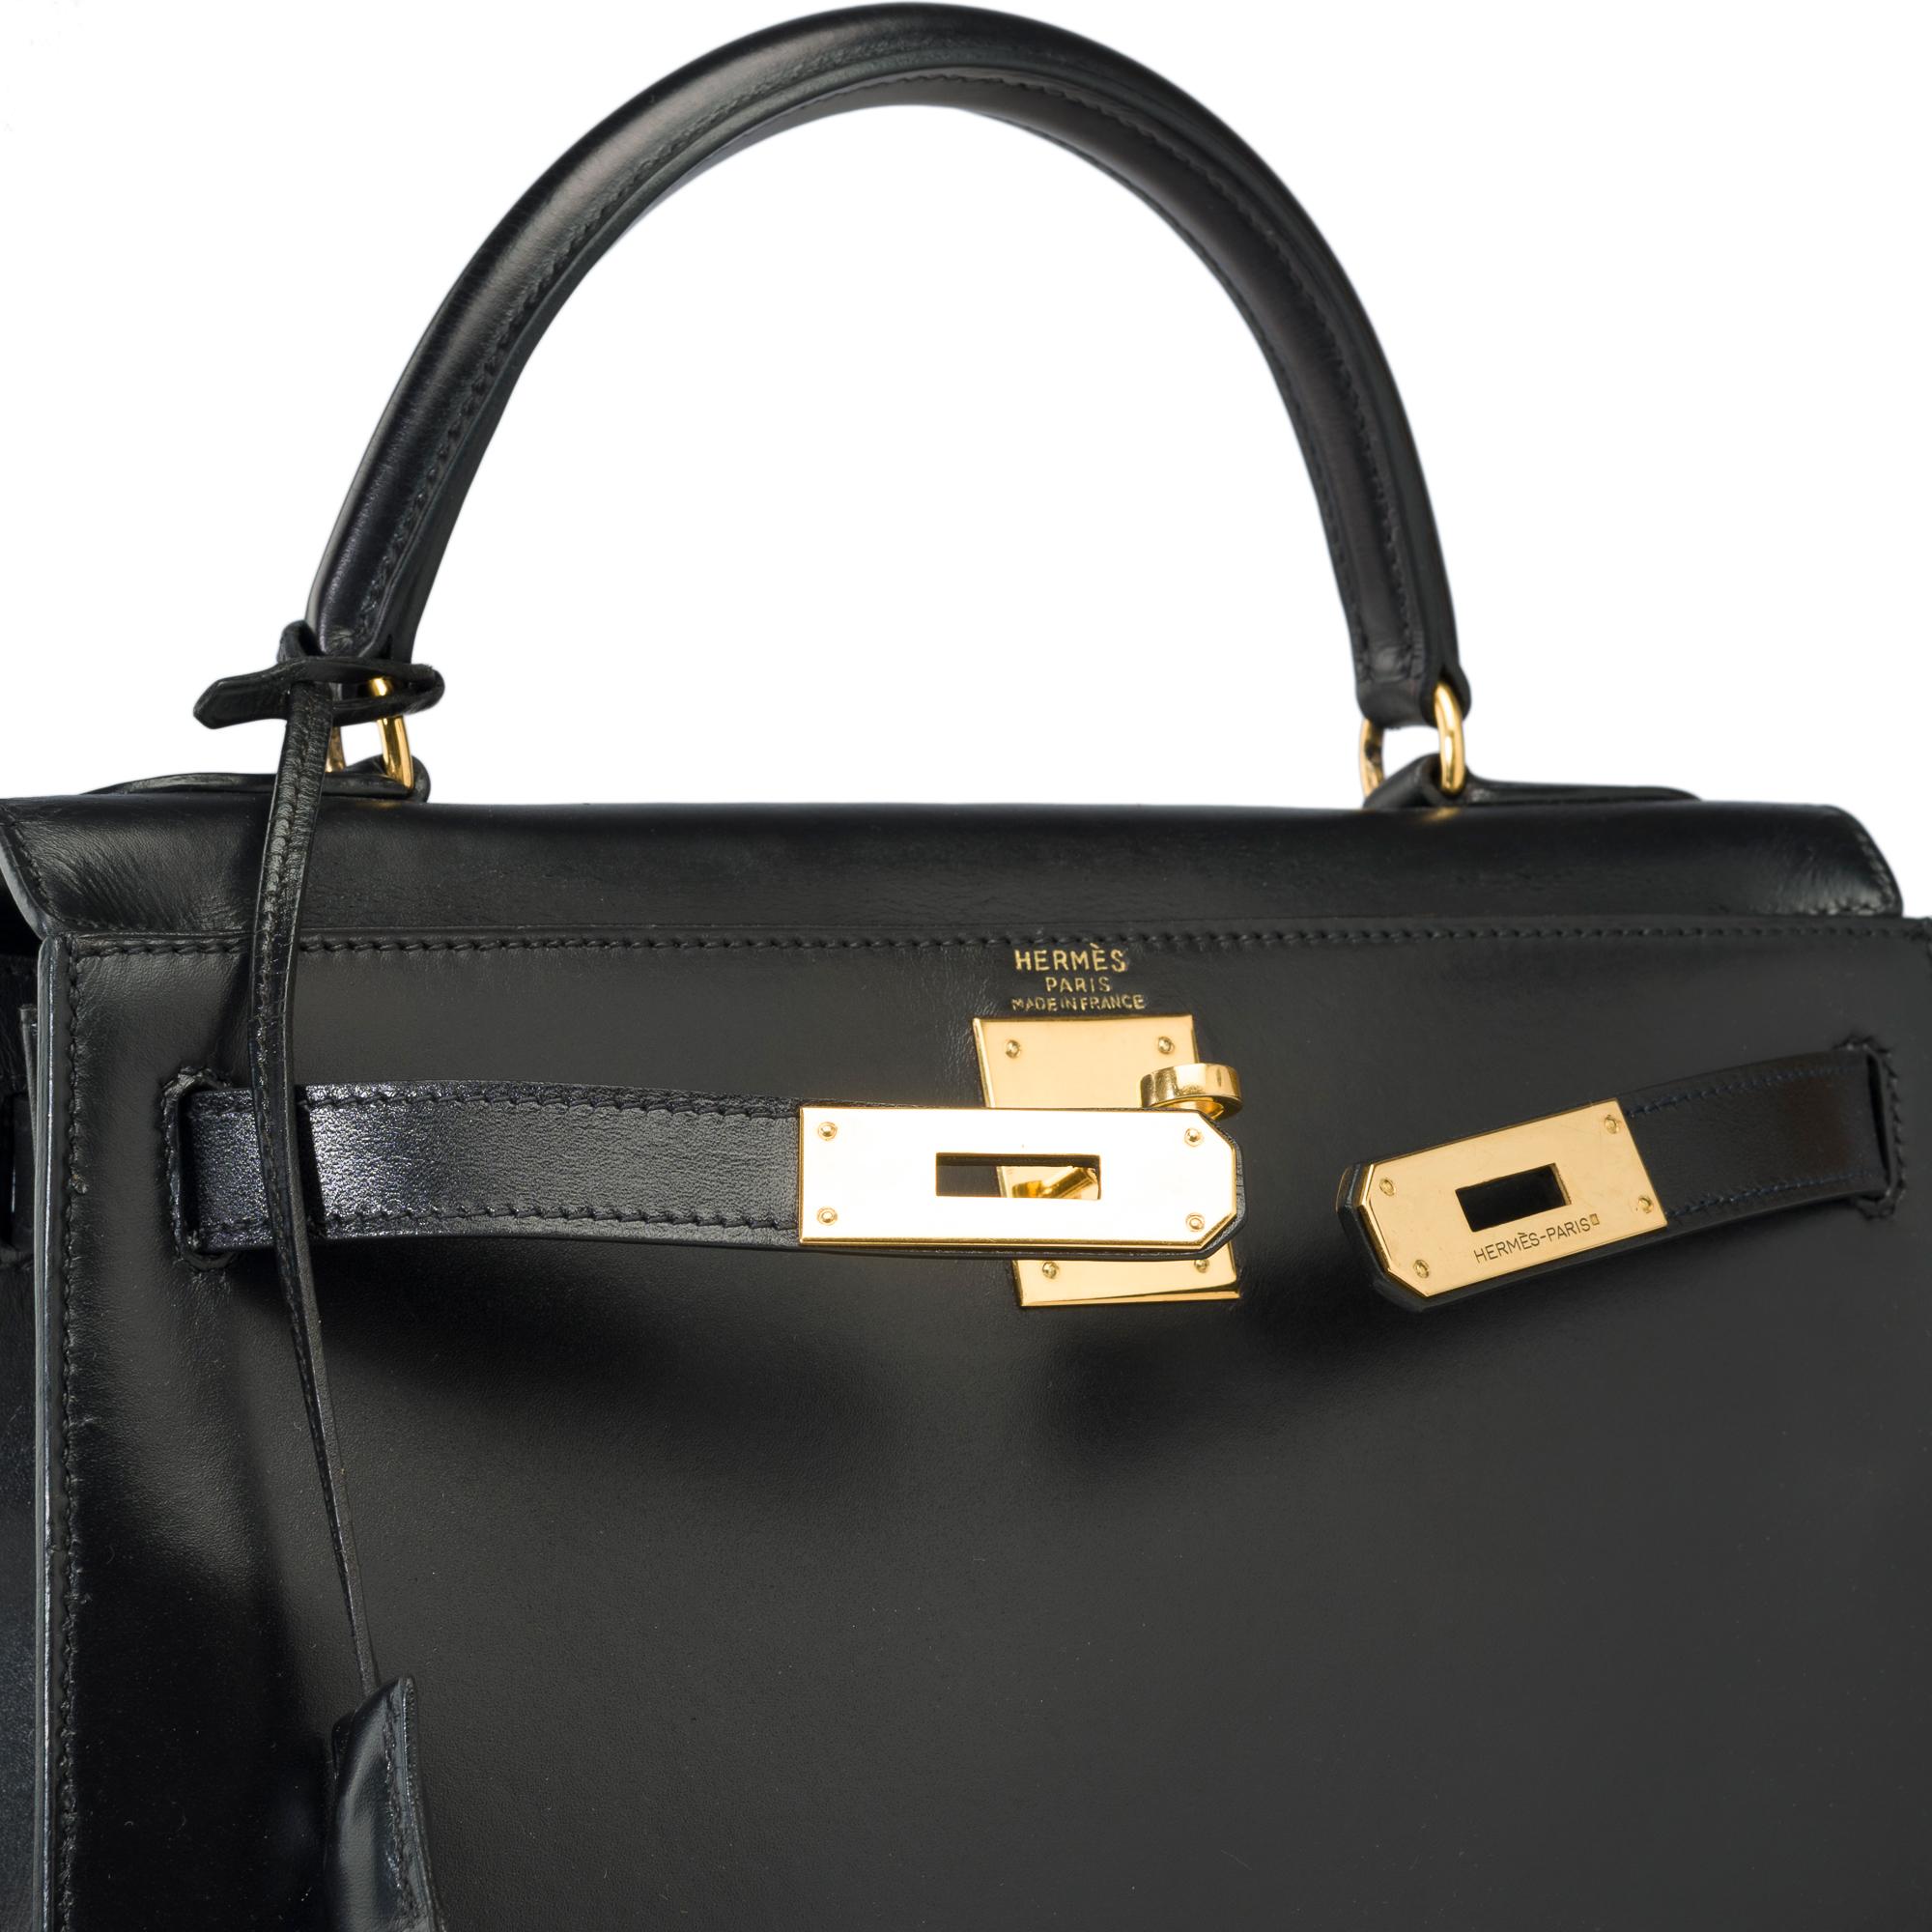 Hermes Kelly 28 sellier handbag in Black box calfskin leather, GHW For Sale 2